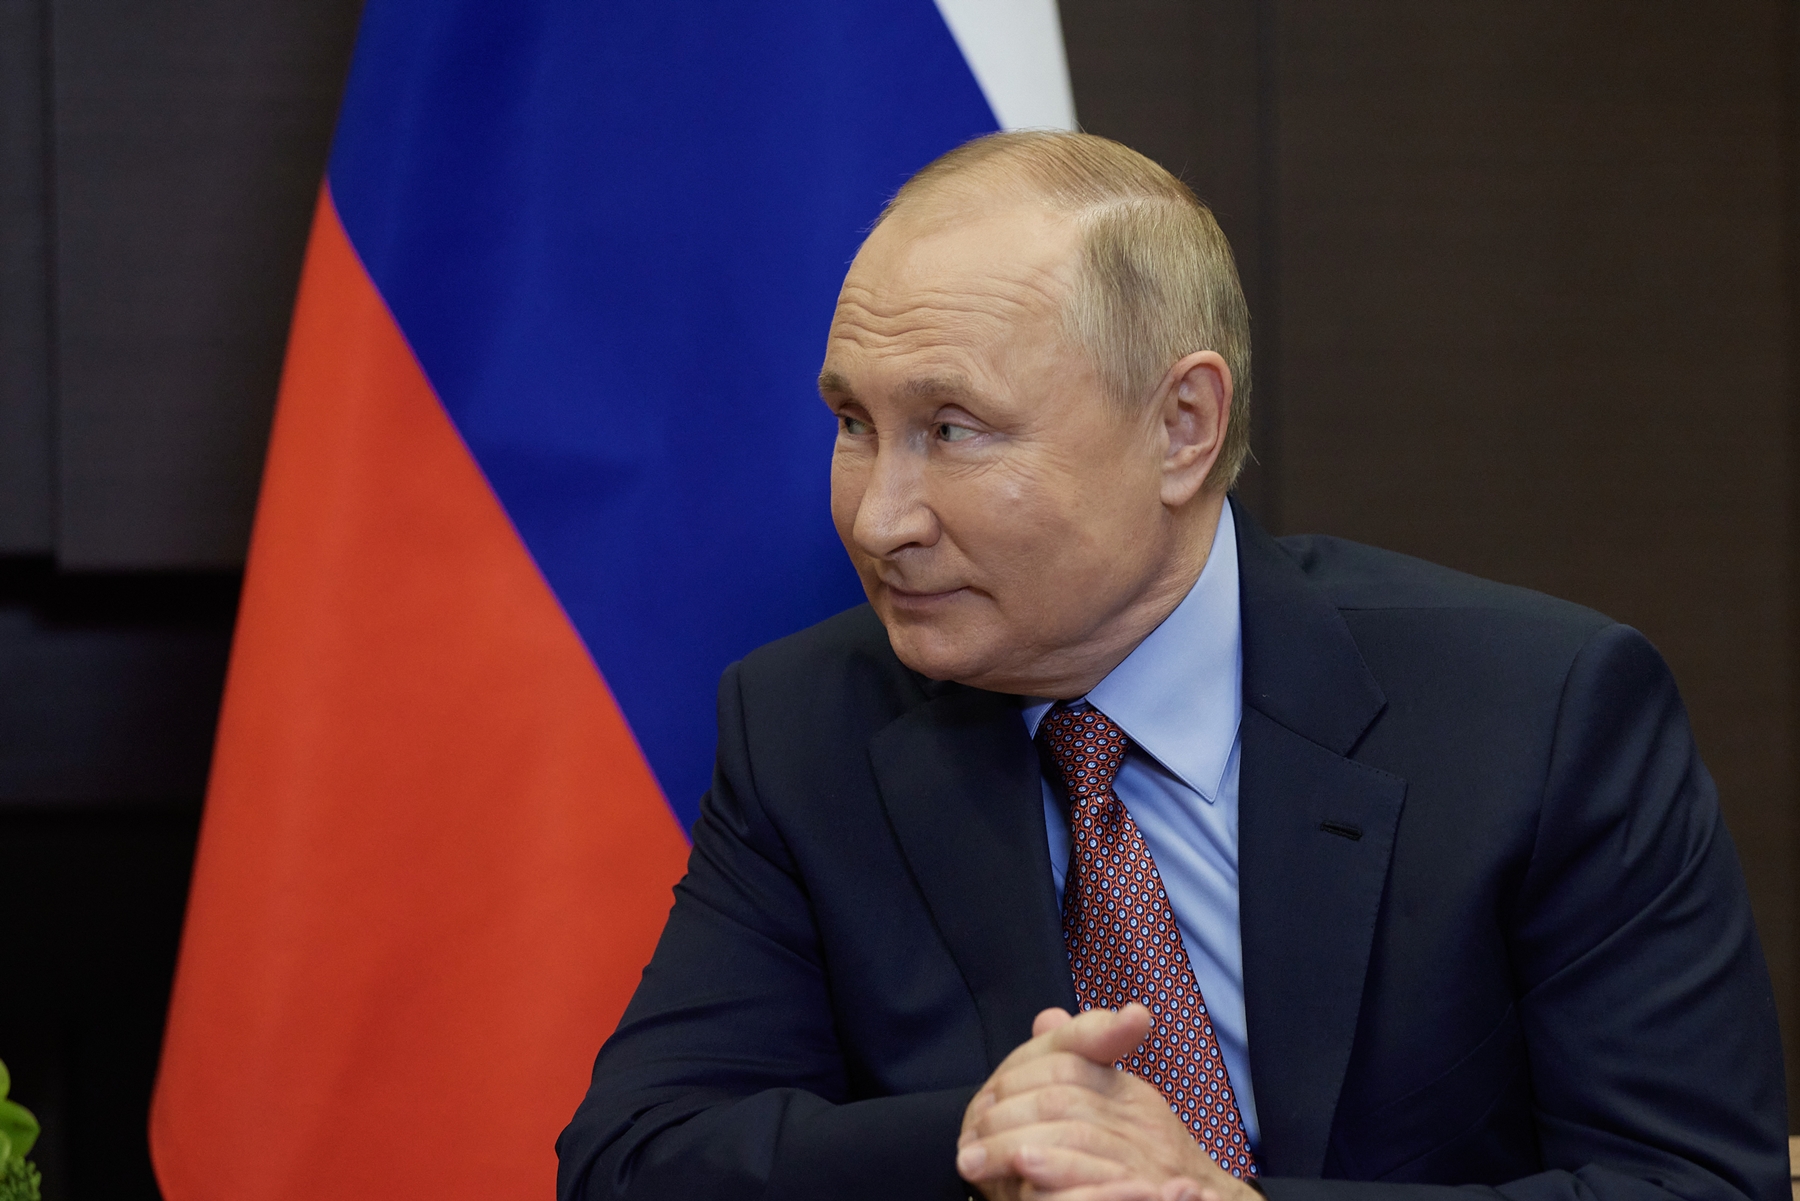 Κυρώσεις Βρετανίας σε Ρωσία: Στο στόχαστρο όλοι οι συγγενείς του Πούτιν